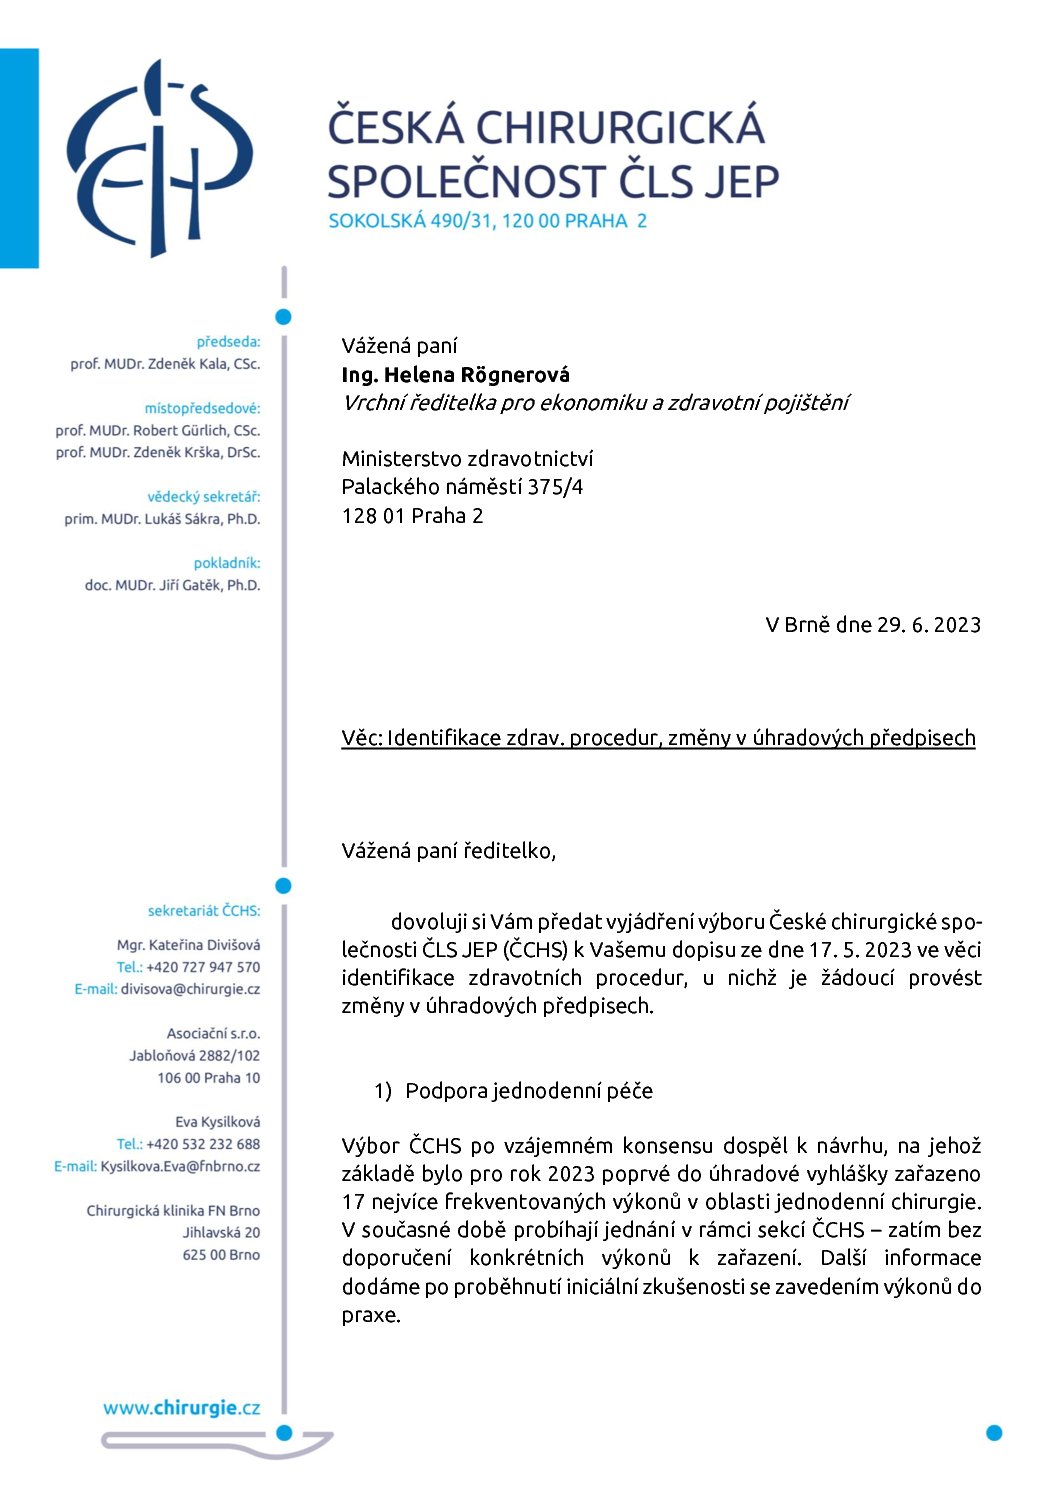 Stanovisko výboru ČCHS ČLS JEP k identifikaci zdravotních procedur + změny v úhradových předpisech (29. 6. 2023)